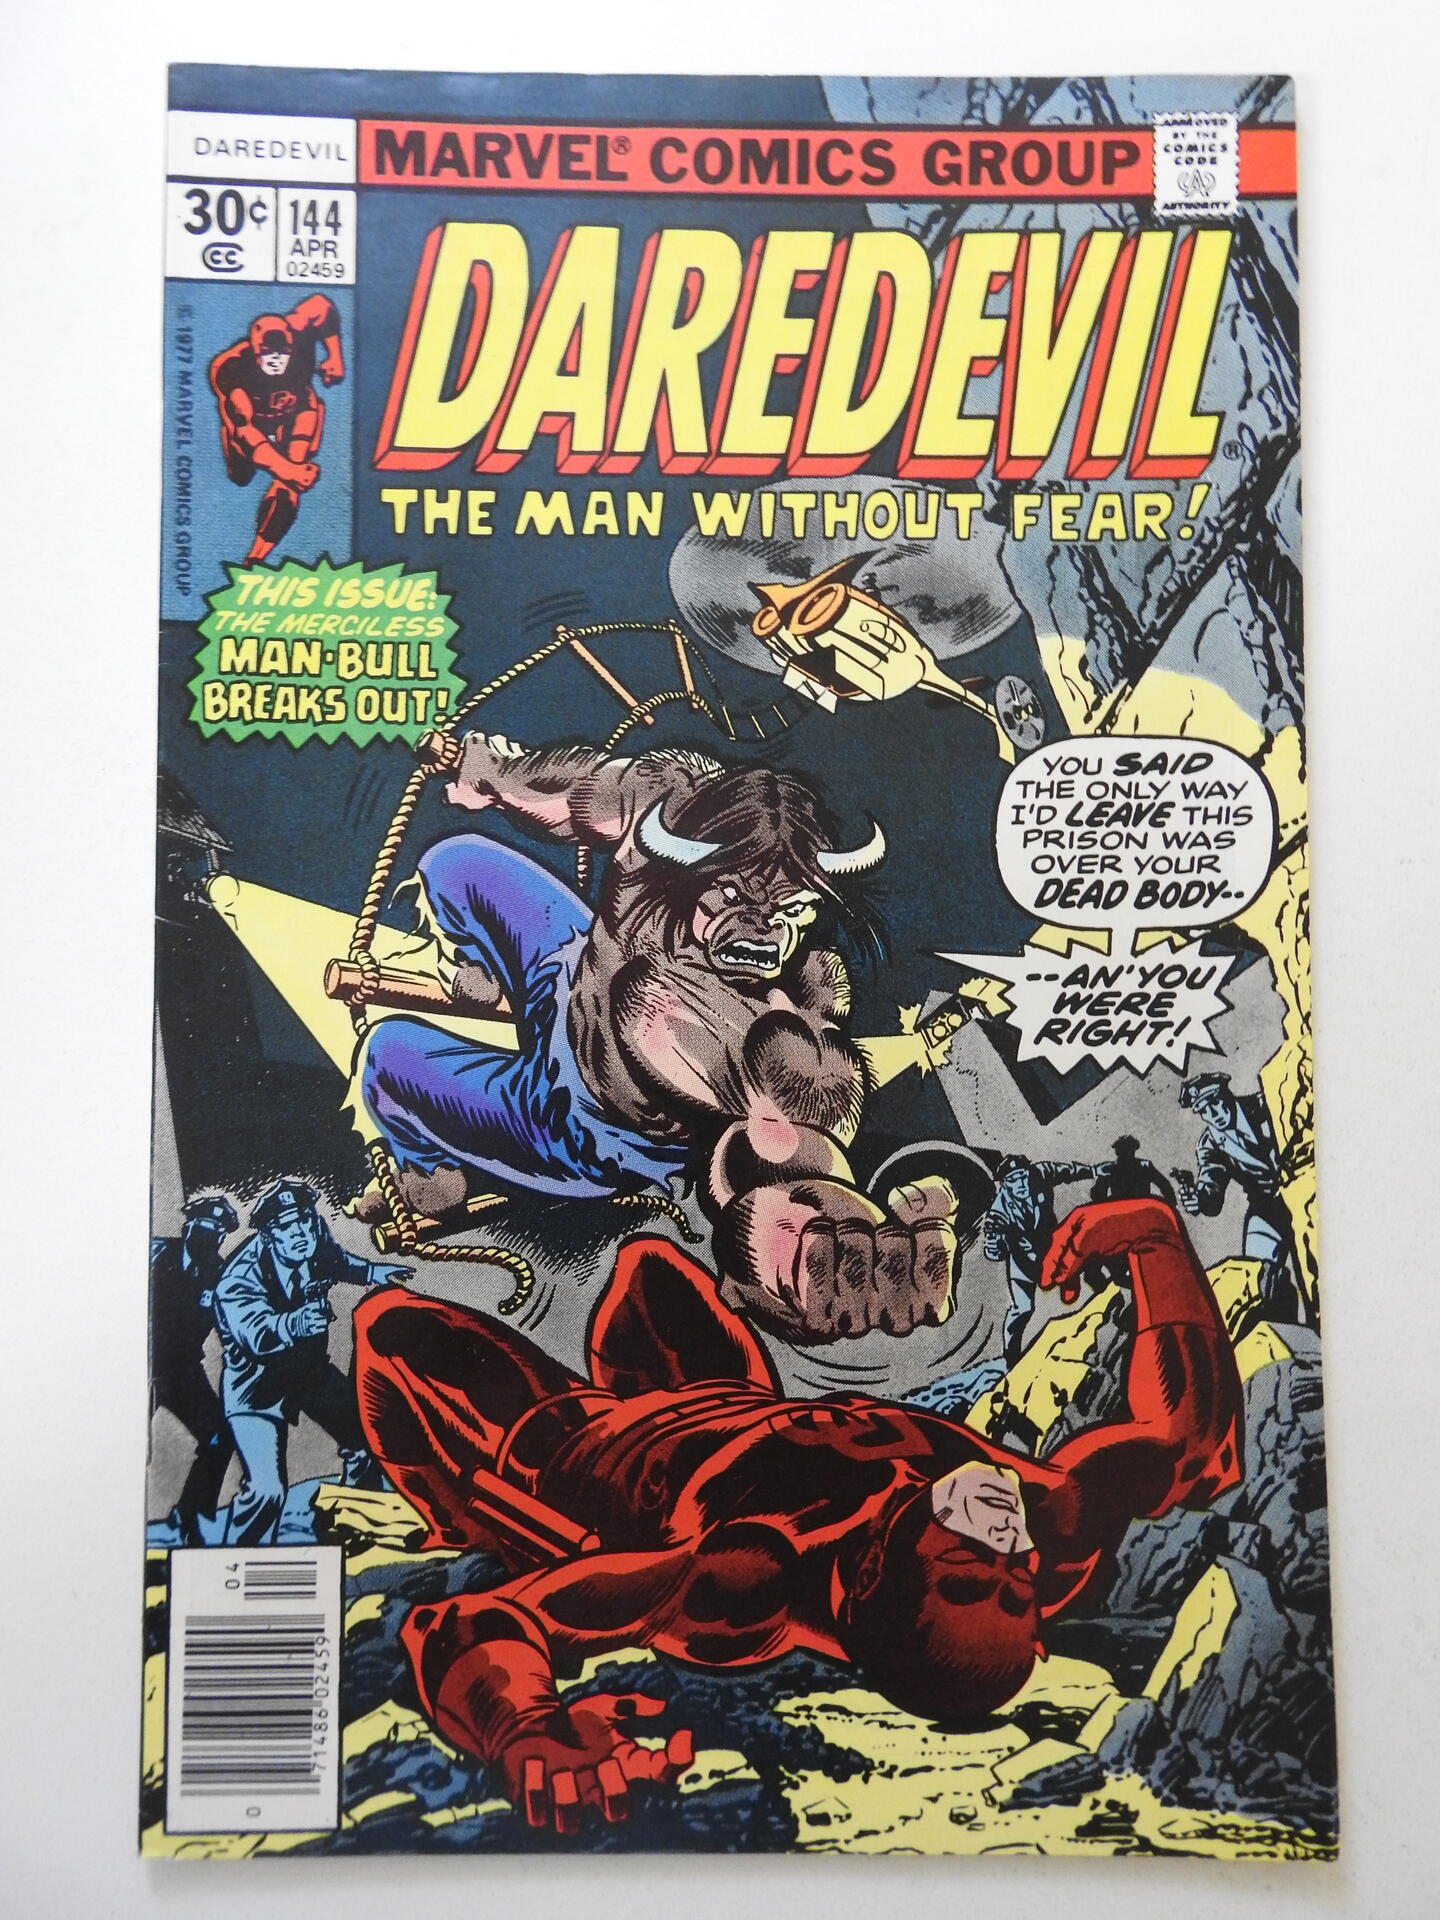 Daredevil #144 VF/NM Condition! | Comic Books - Bronze Age / HipComic